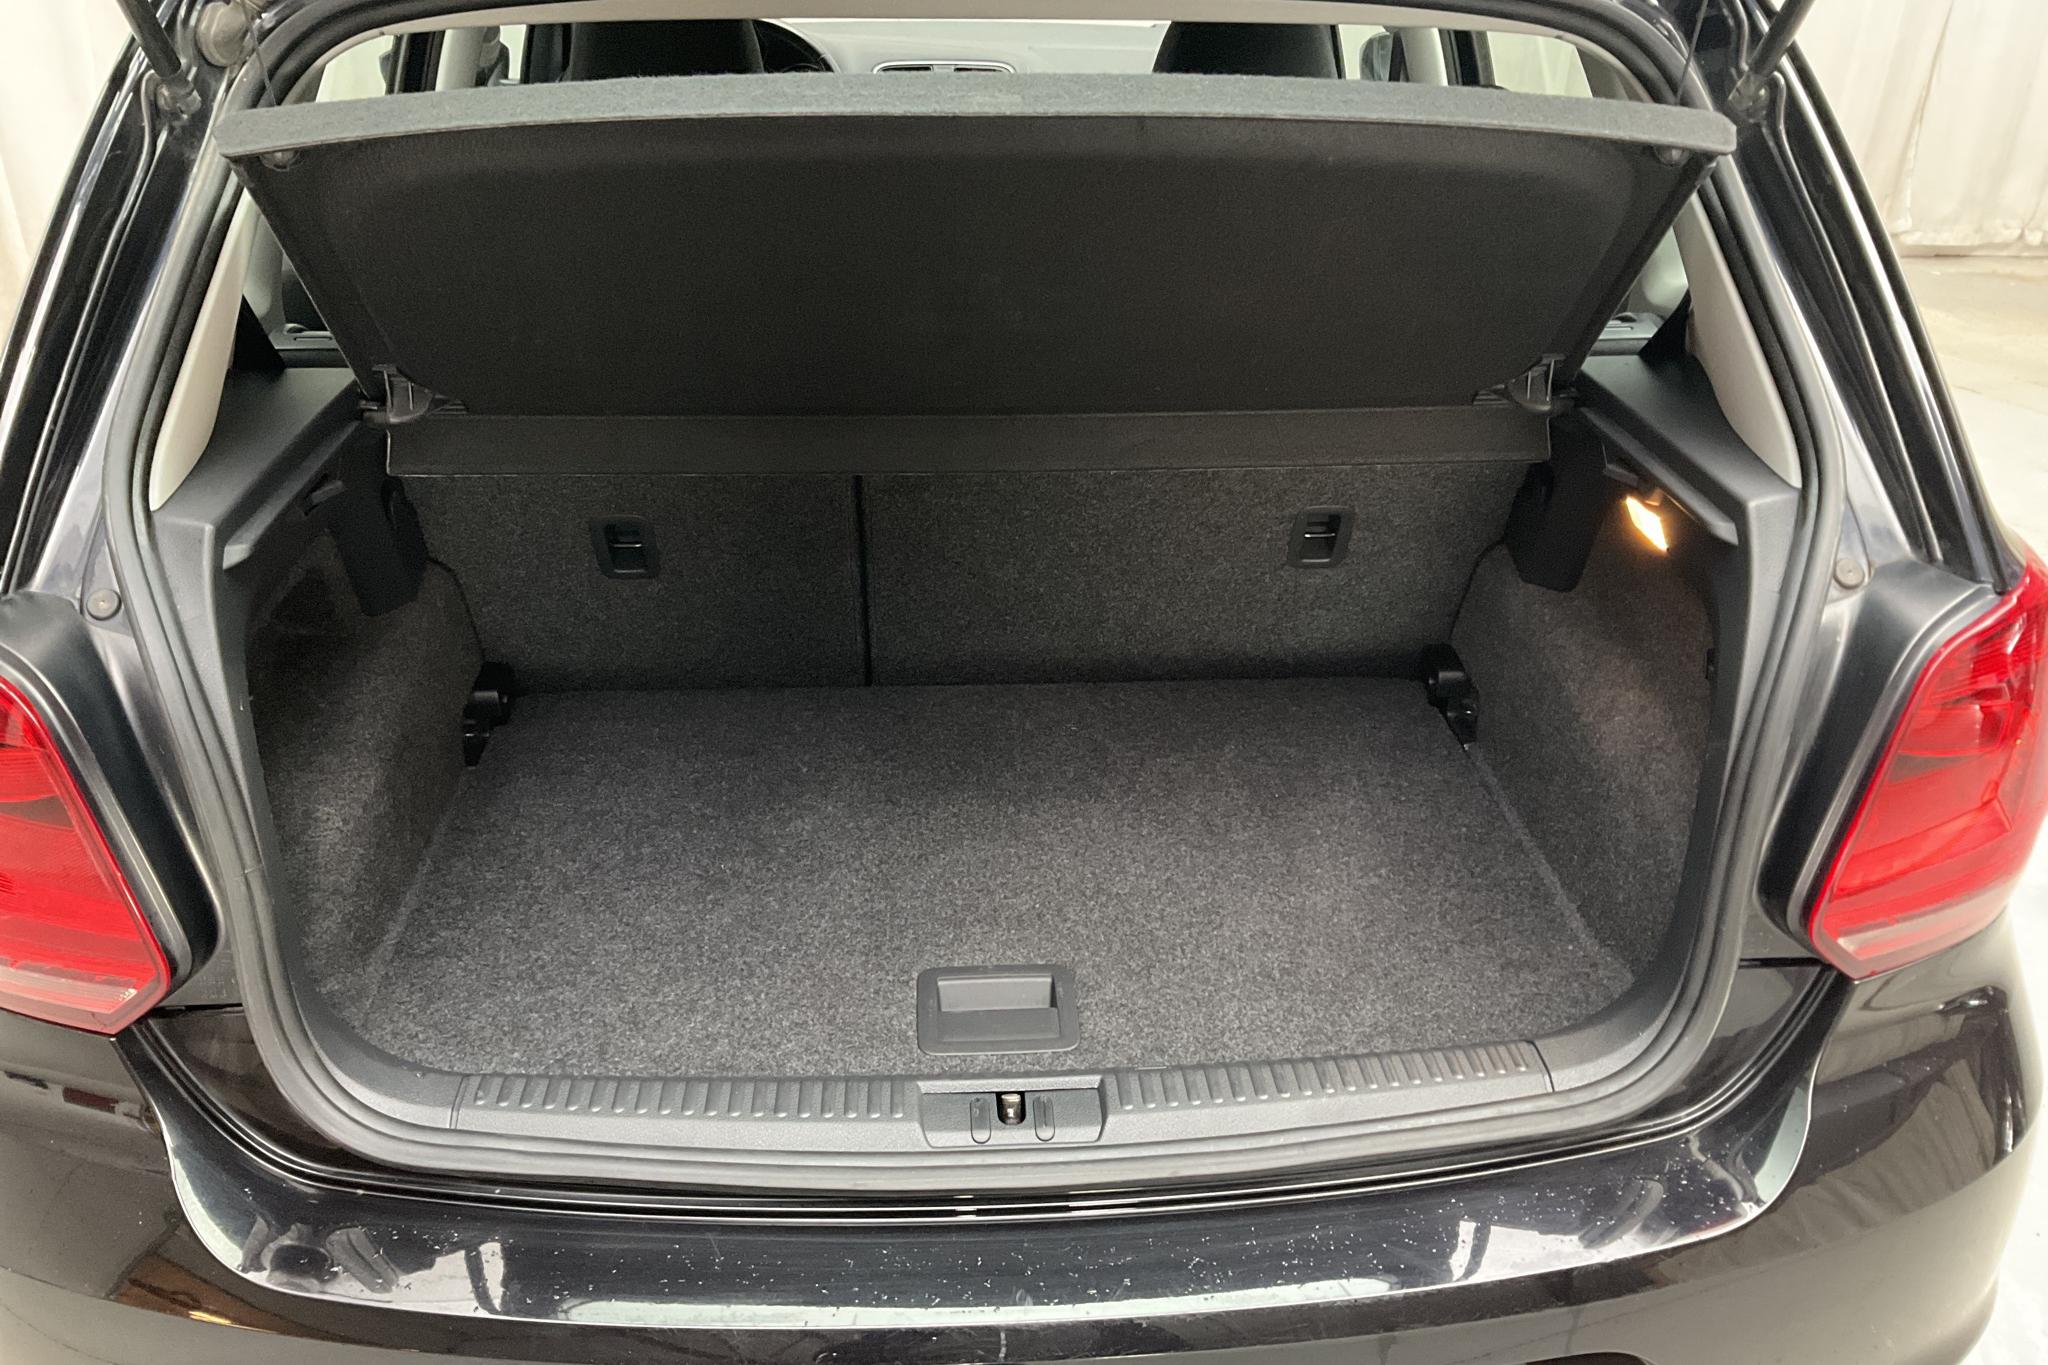 VW Polo 1.2 TSI 5dr (90hk) - 49 880 km - Manual - black - 2015